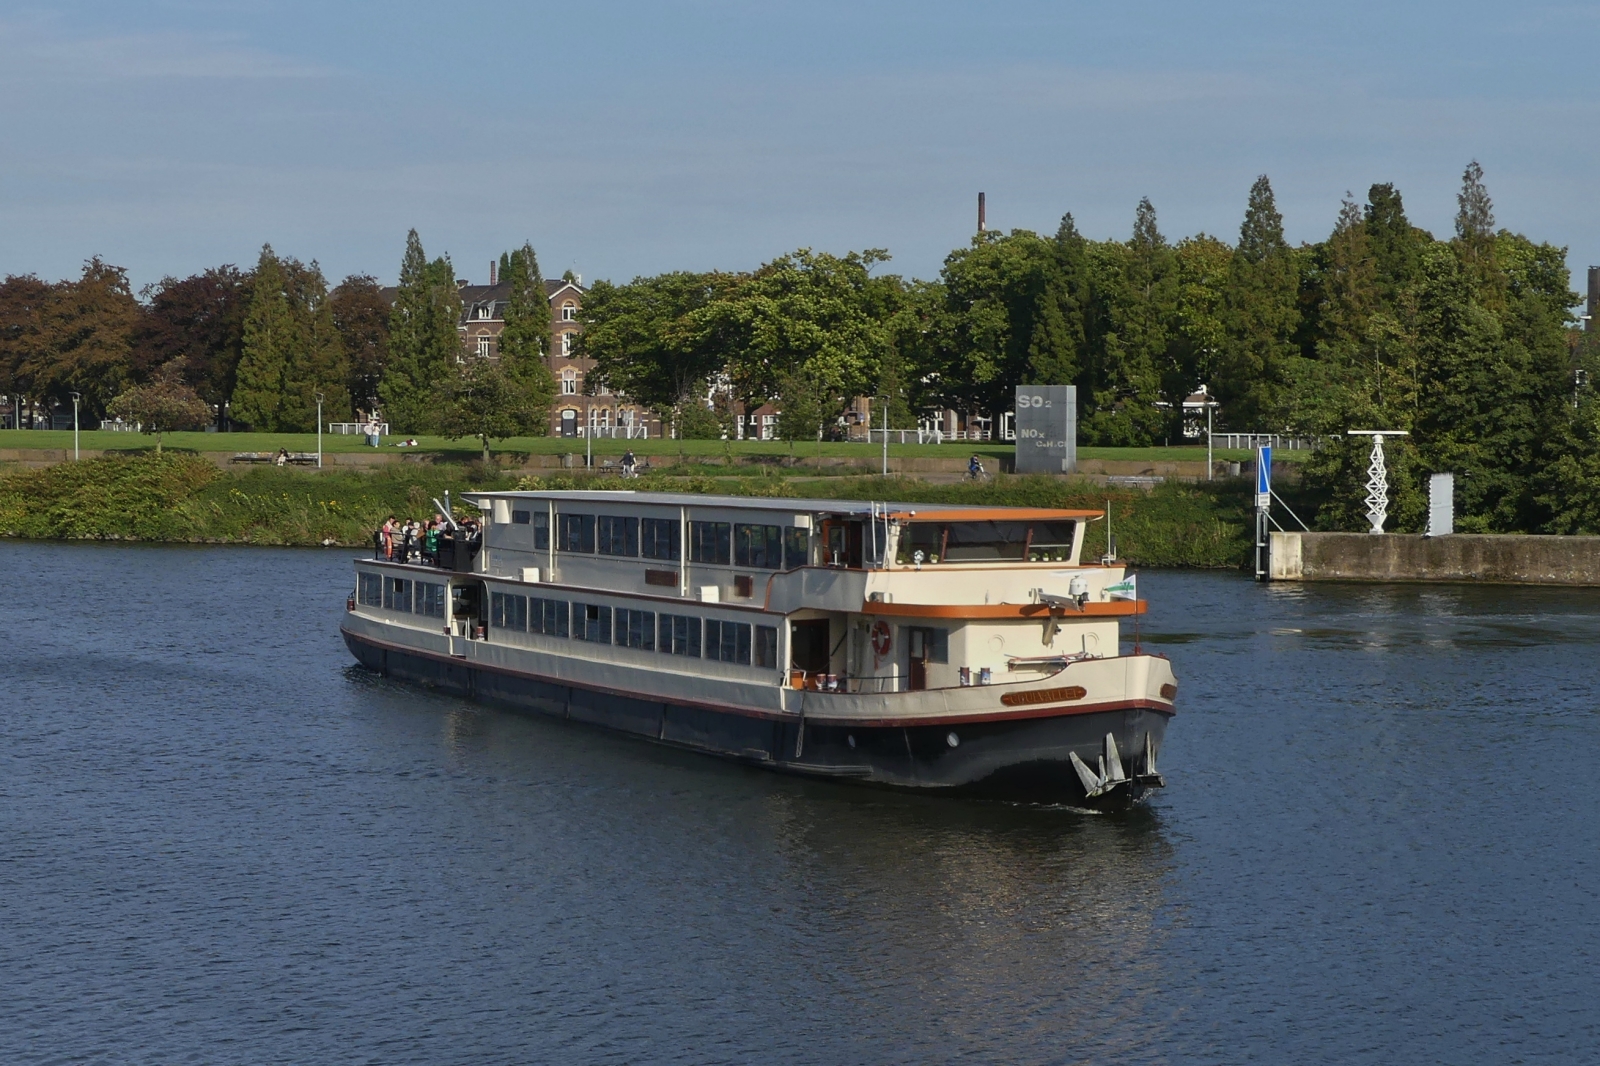 FGS Geulvallei kehrt von einer Fluss Rundfahrt zurück und nähert sich dem Anleger in Maastricht. 10.2023